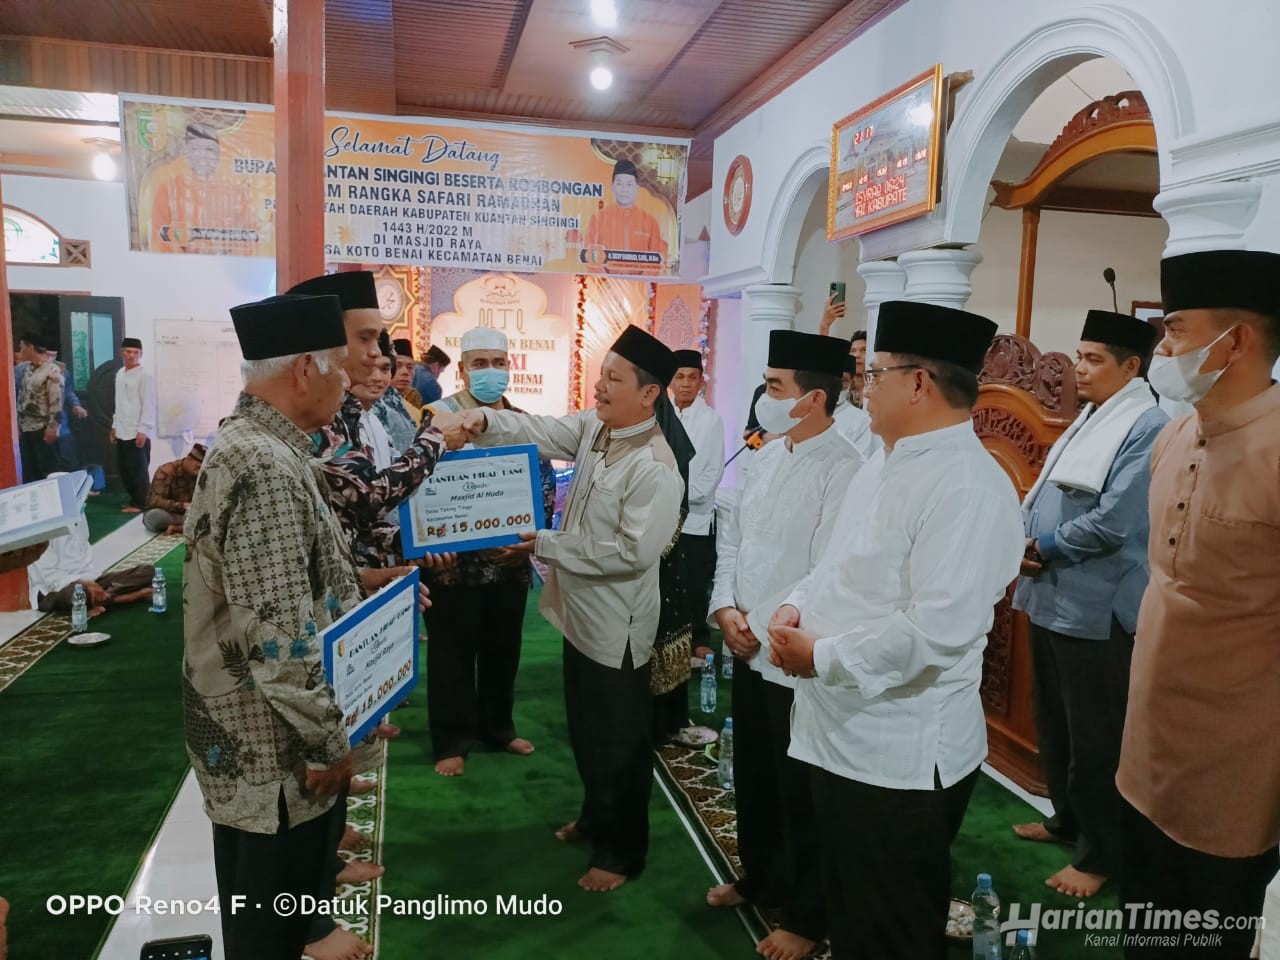 Wakili Plt Bupati Suhardiman, Maisir: Pemda Kuansing Komit Membangun di Semua Lini